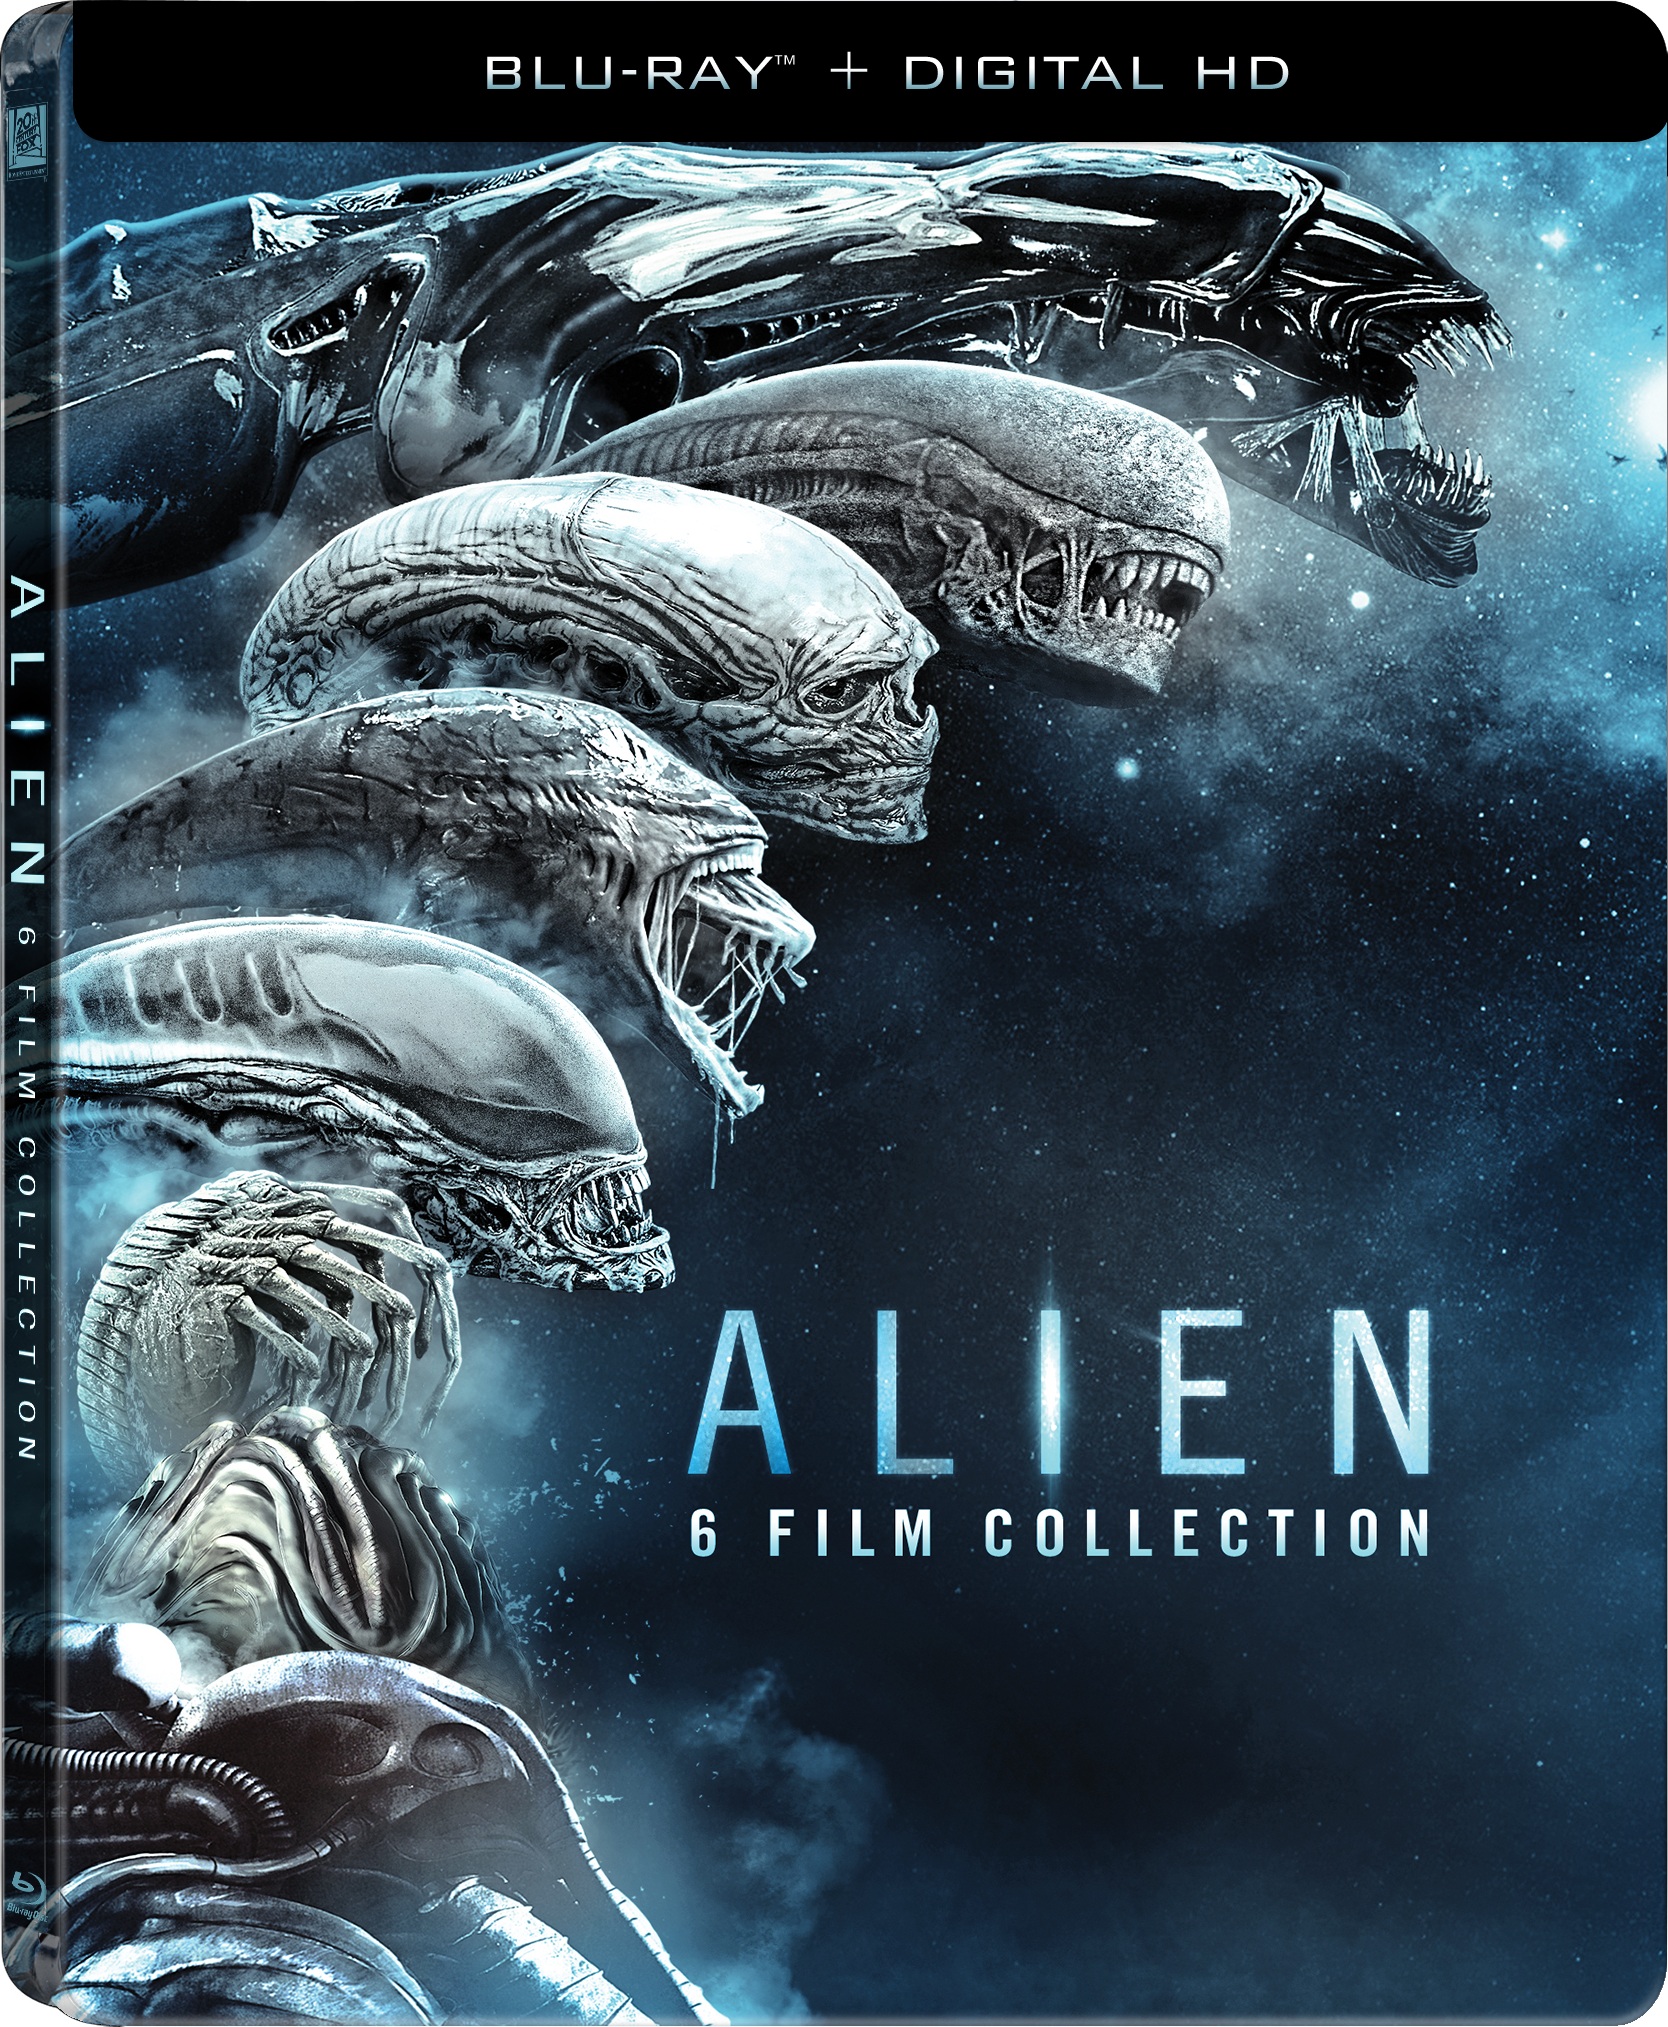 Alien Covenant Ultra HD Steelbook Coming Soon - Alien vs. Predator Galaxy